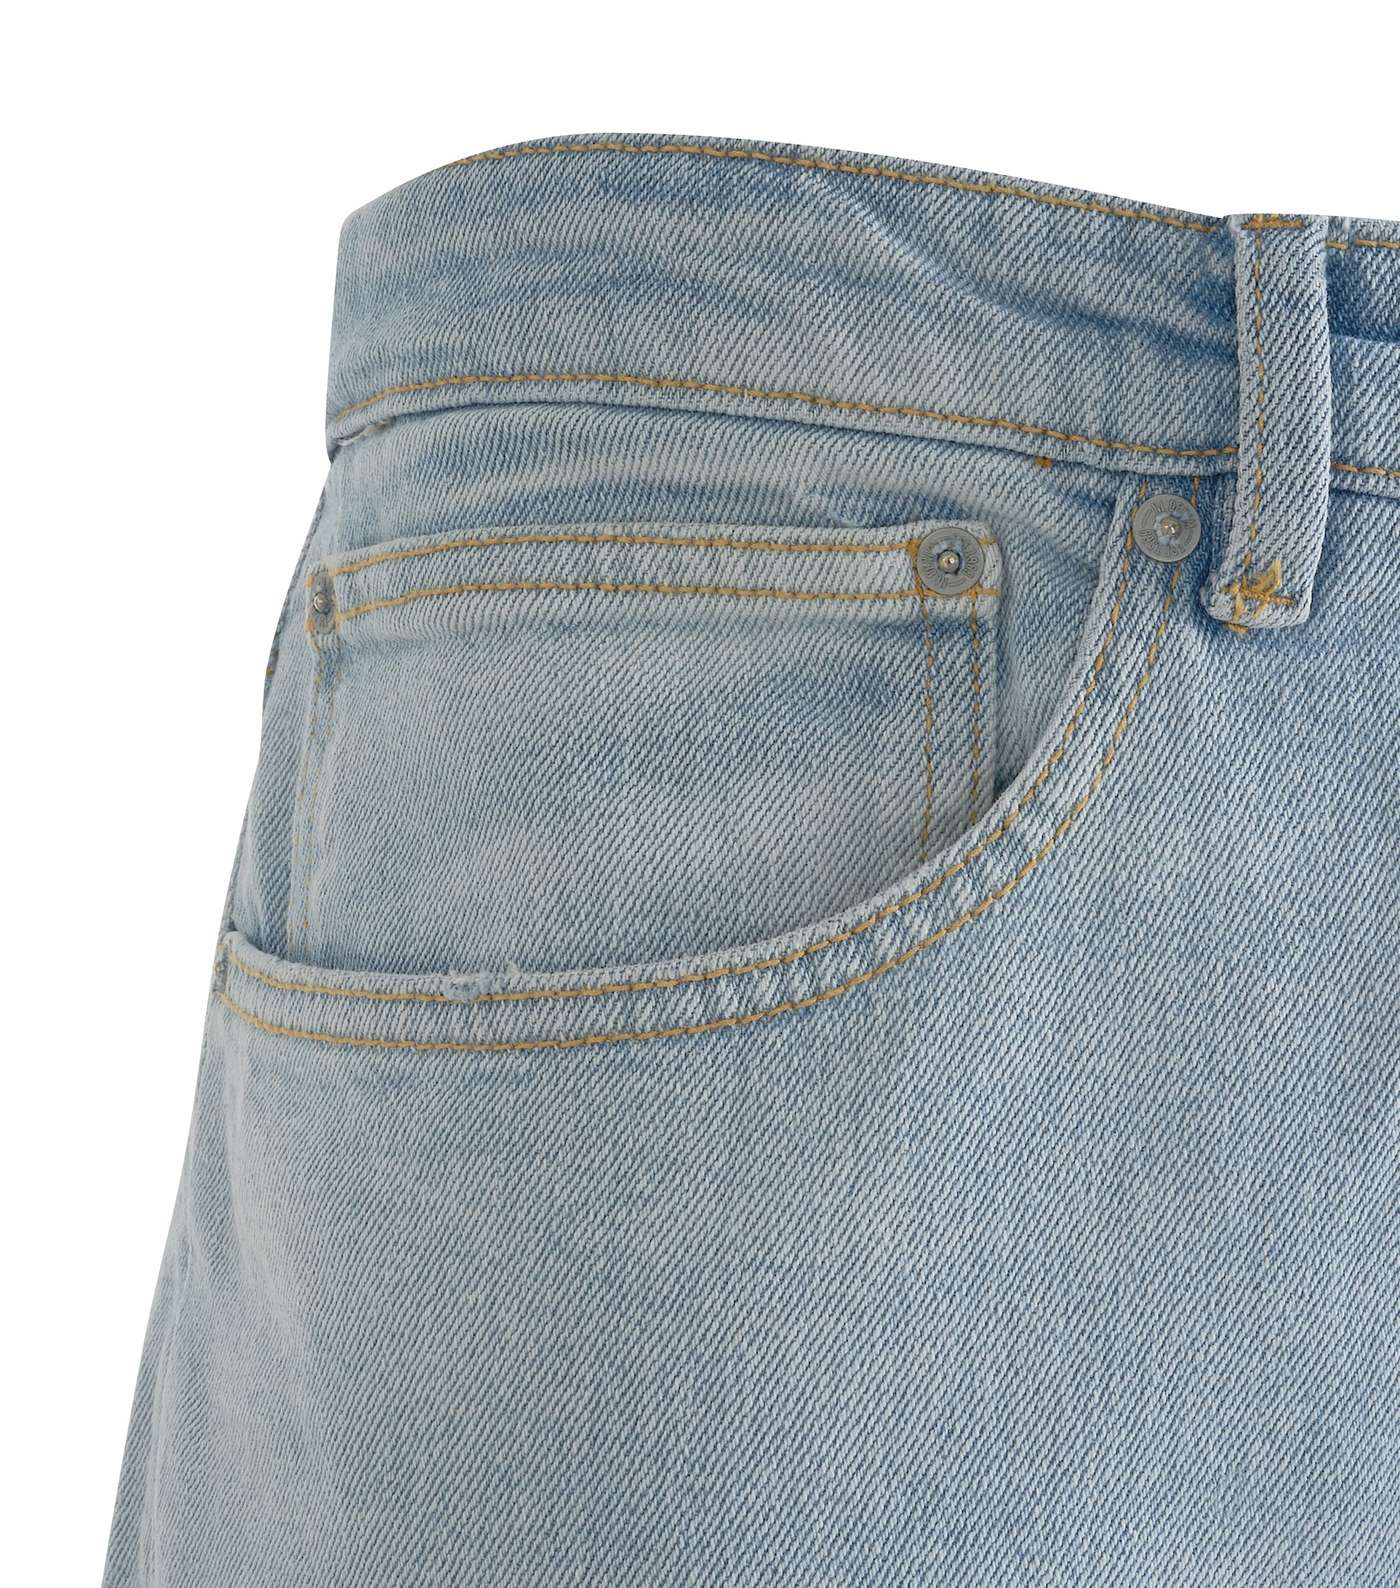 Plus Size Pale Blue Washed Slim Leg Jeans Image 3